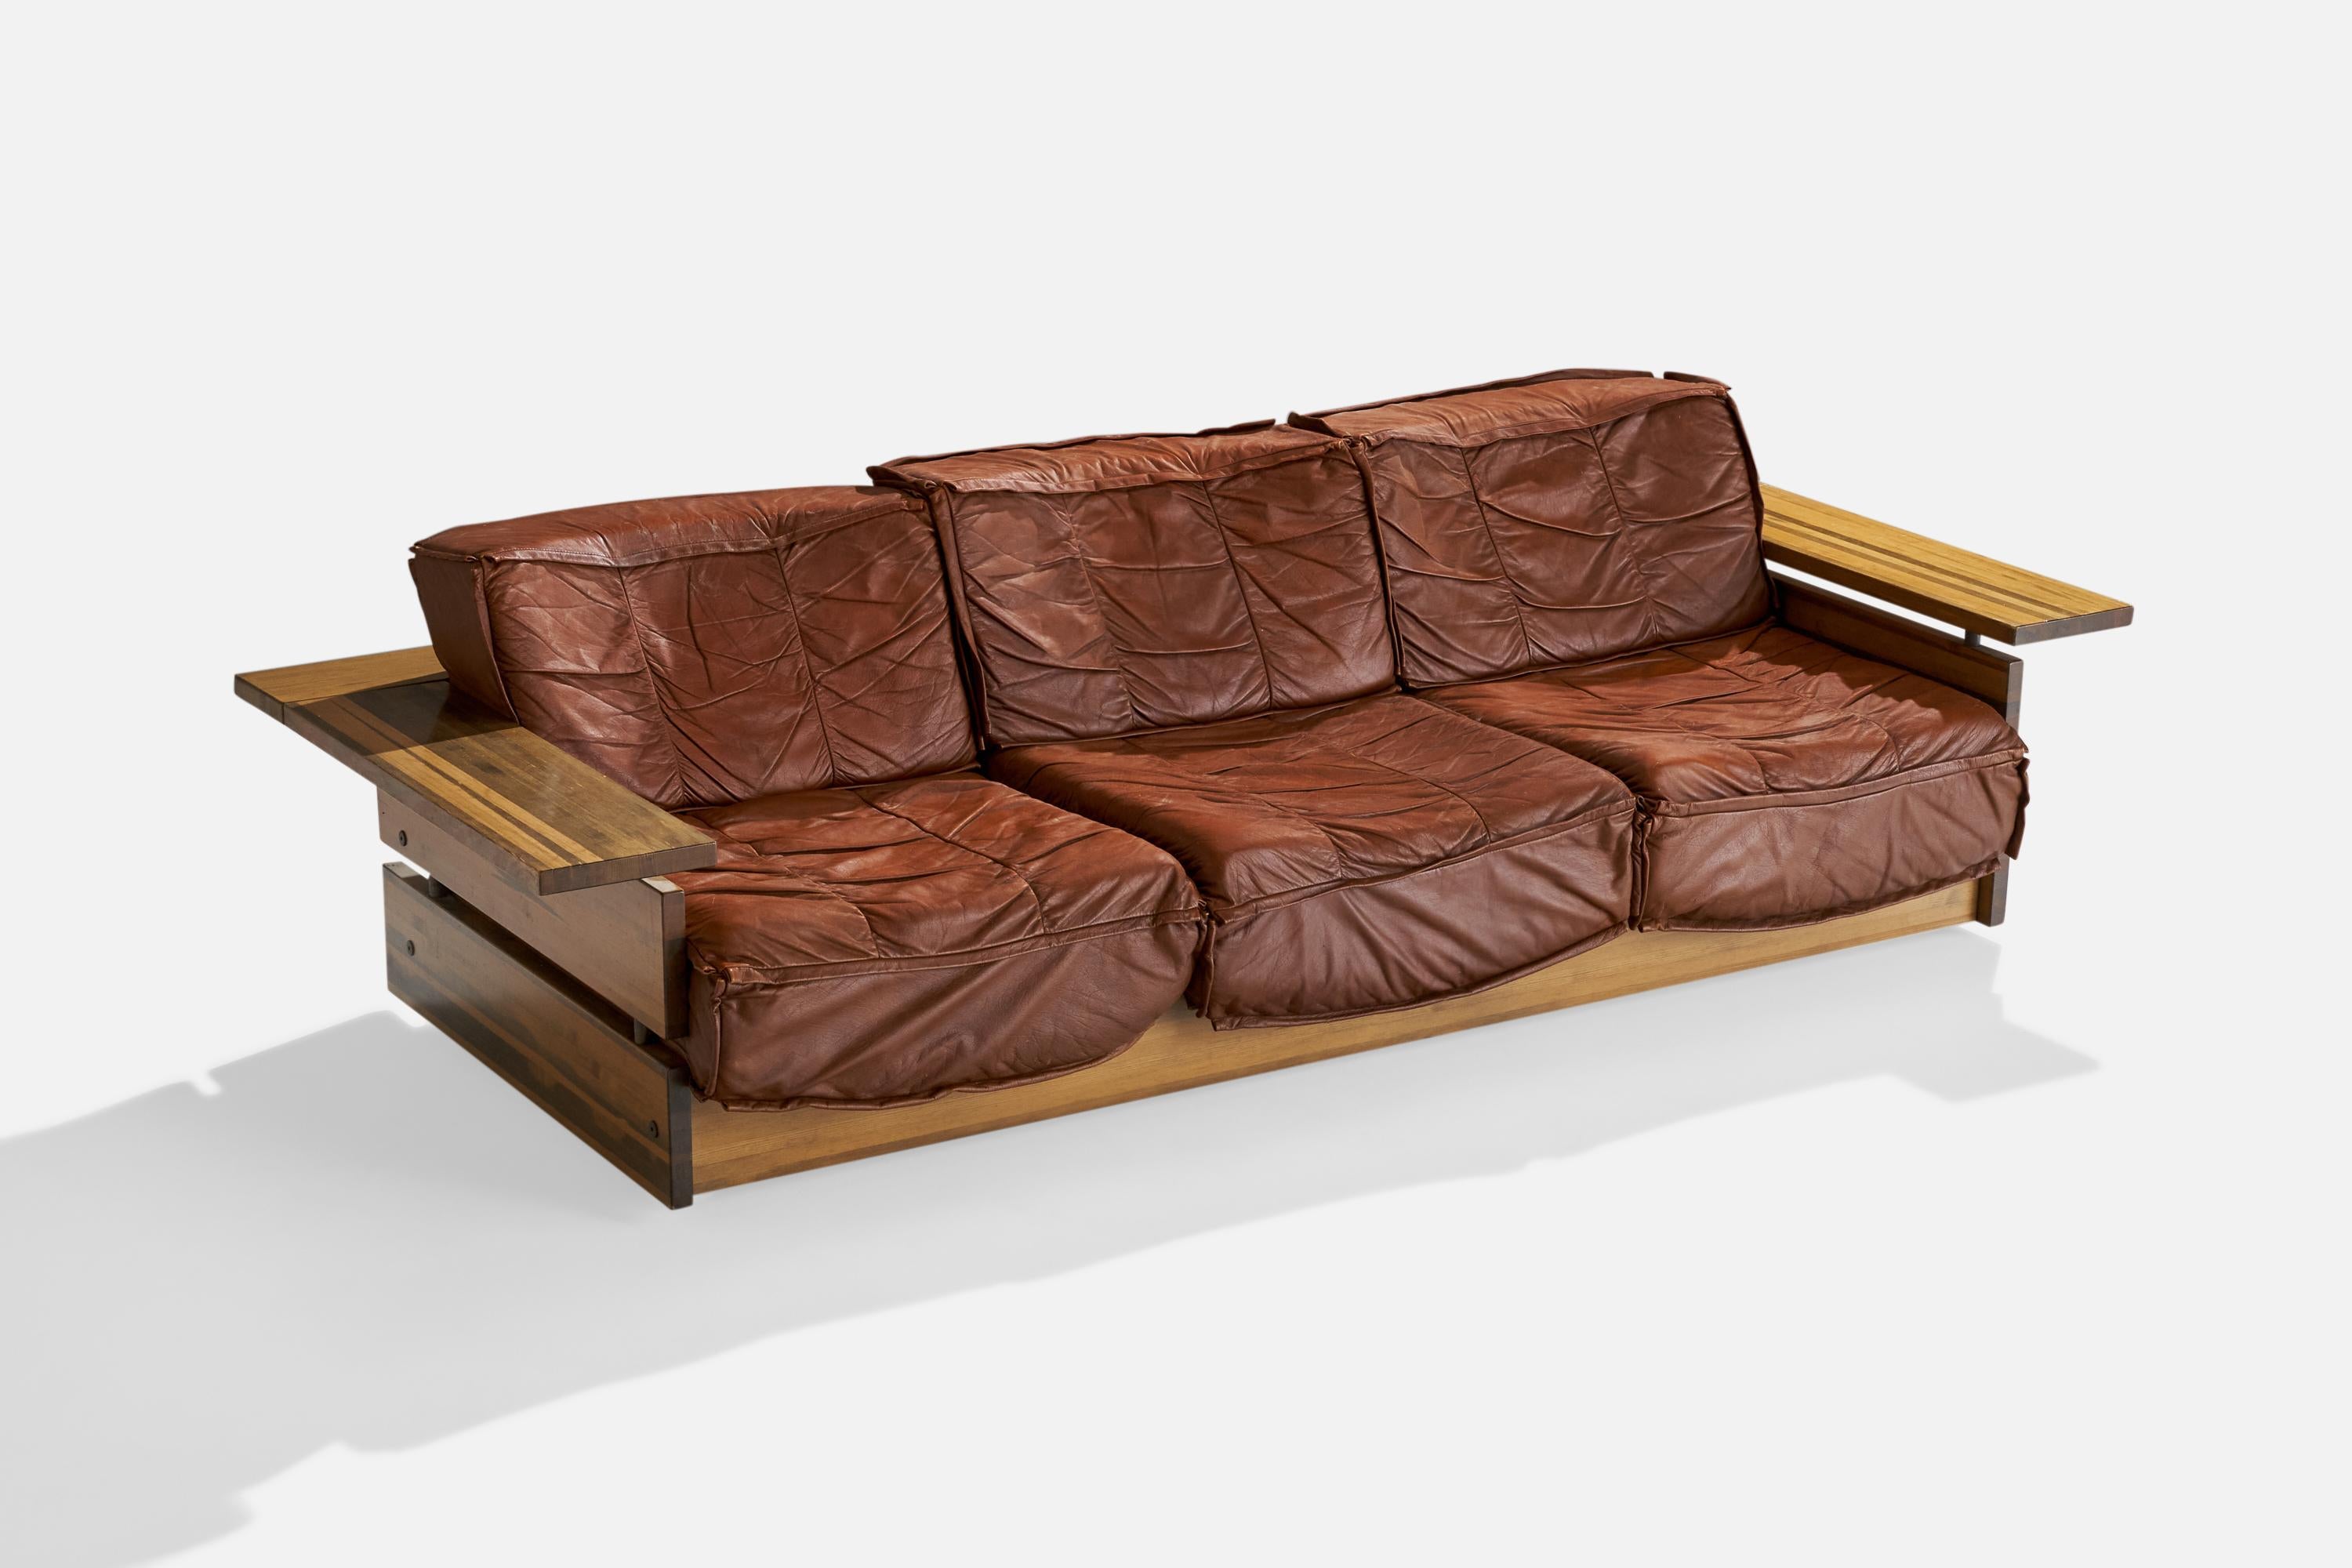 Ein Sofa aus Kiefer und braunem Leder, entworfen und hergestellt von Hämeen Kalustaja, Finnland, 1970er Jahre.

Sitzhöhe 14